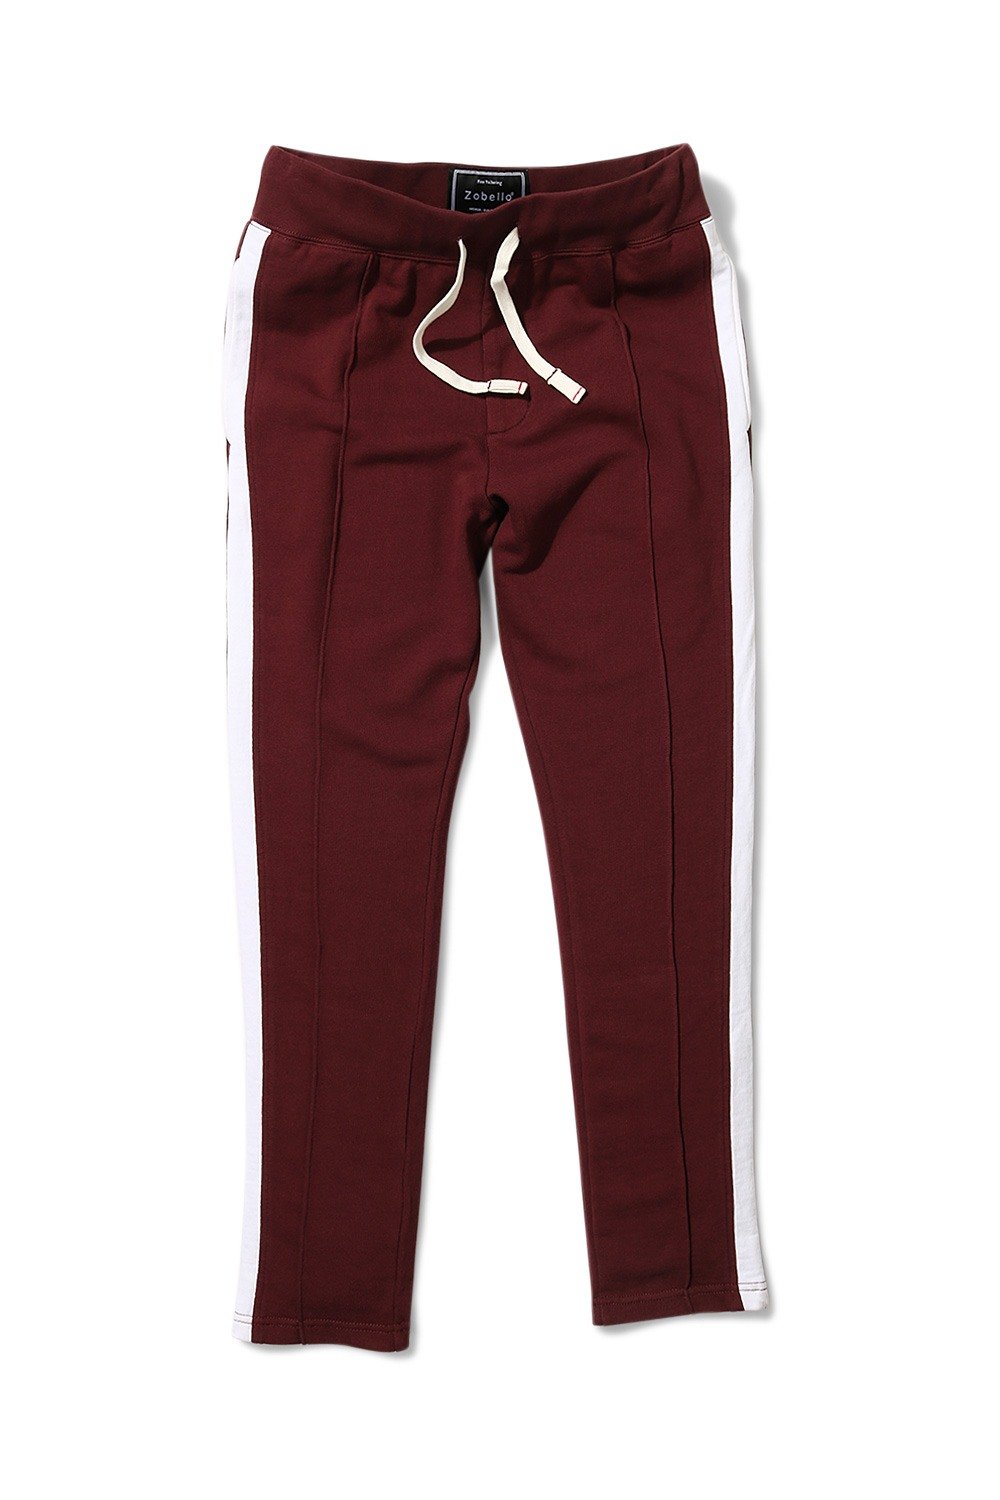 Buy Online Side Colorblock Maroon Sweatpants for Men online at Zobello